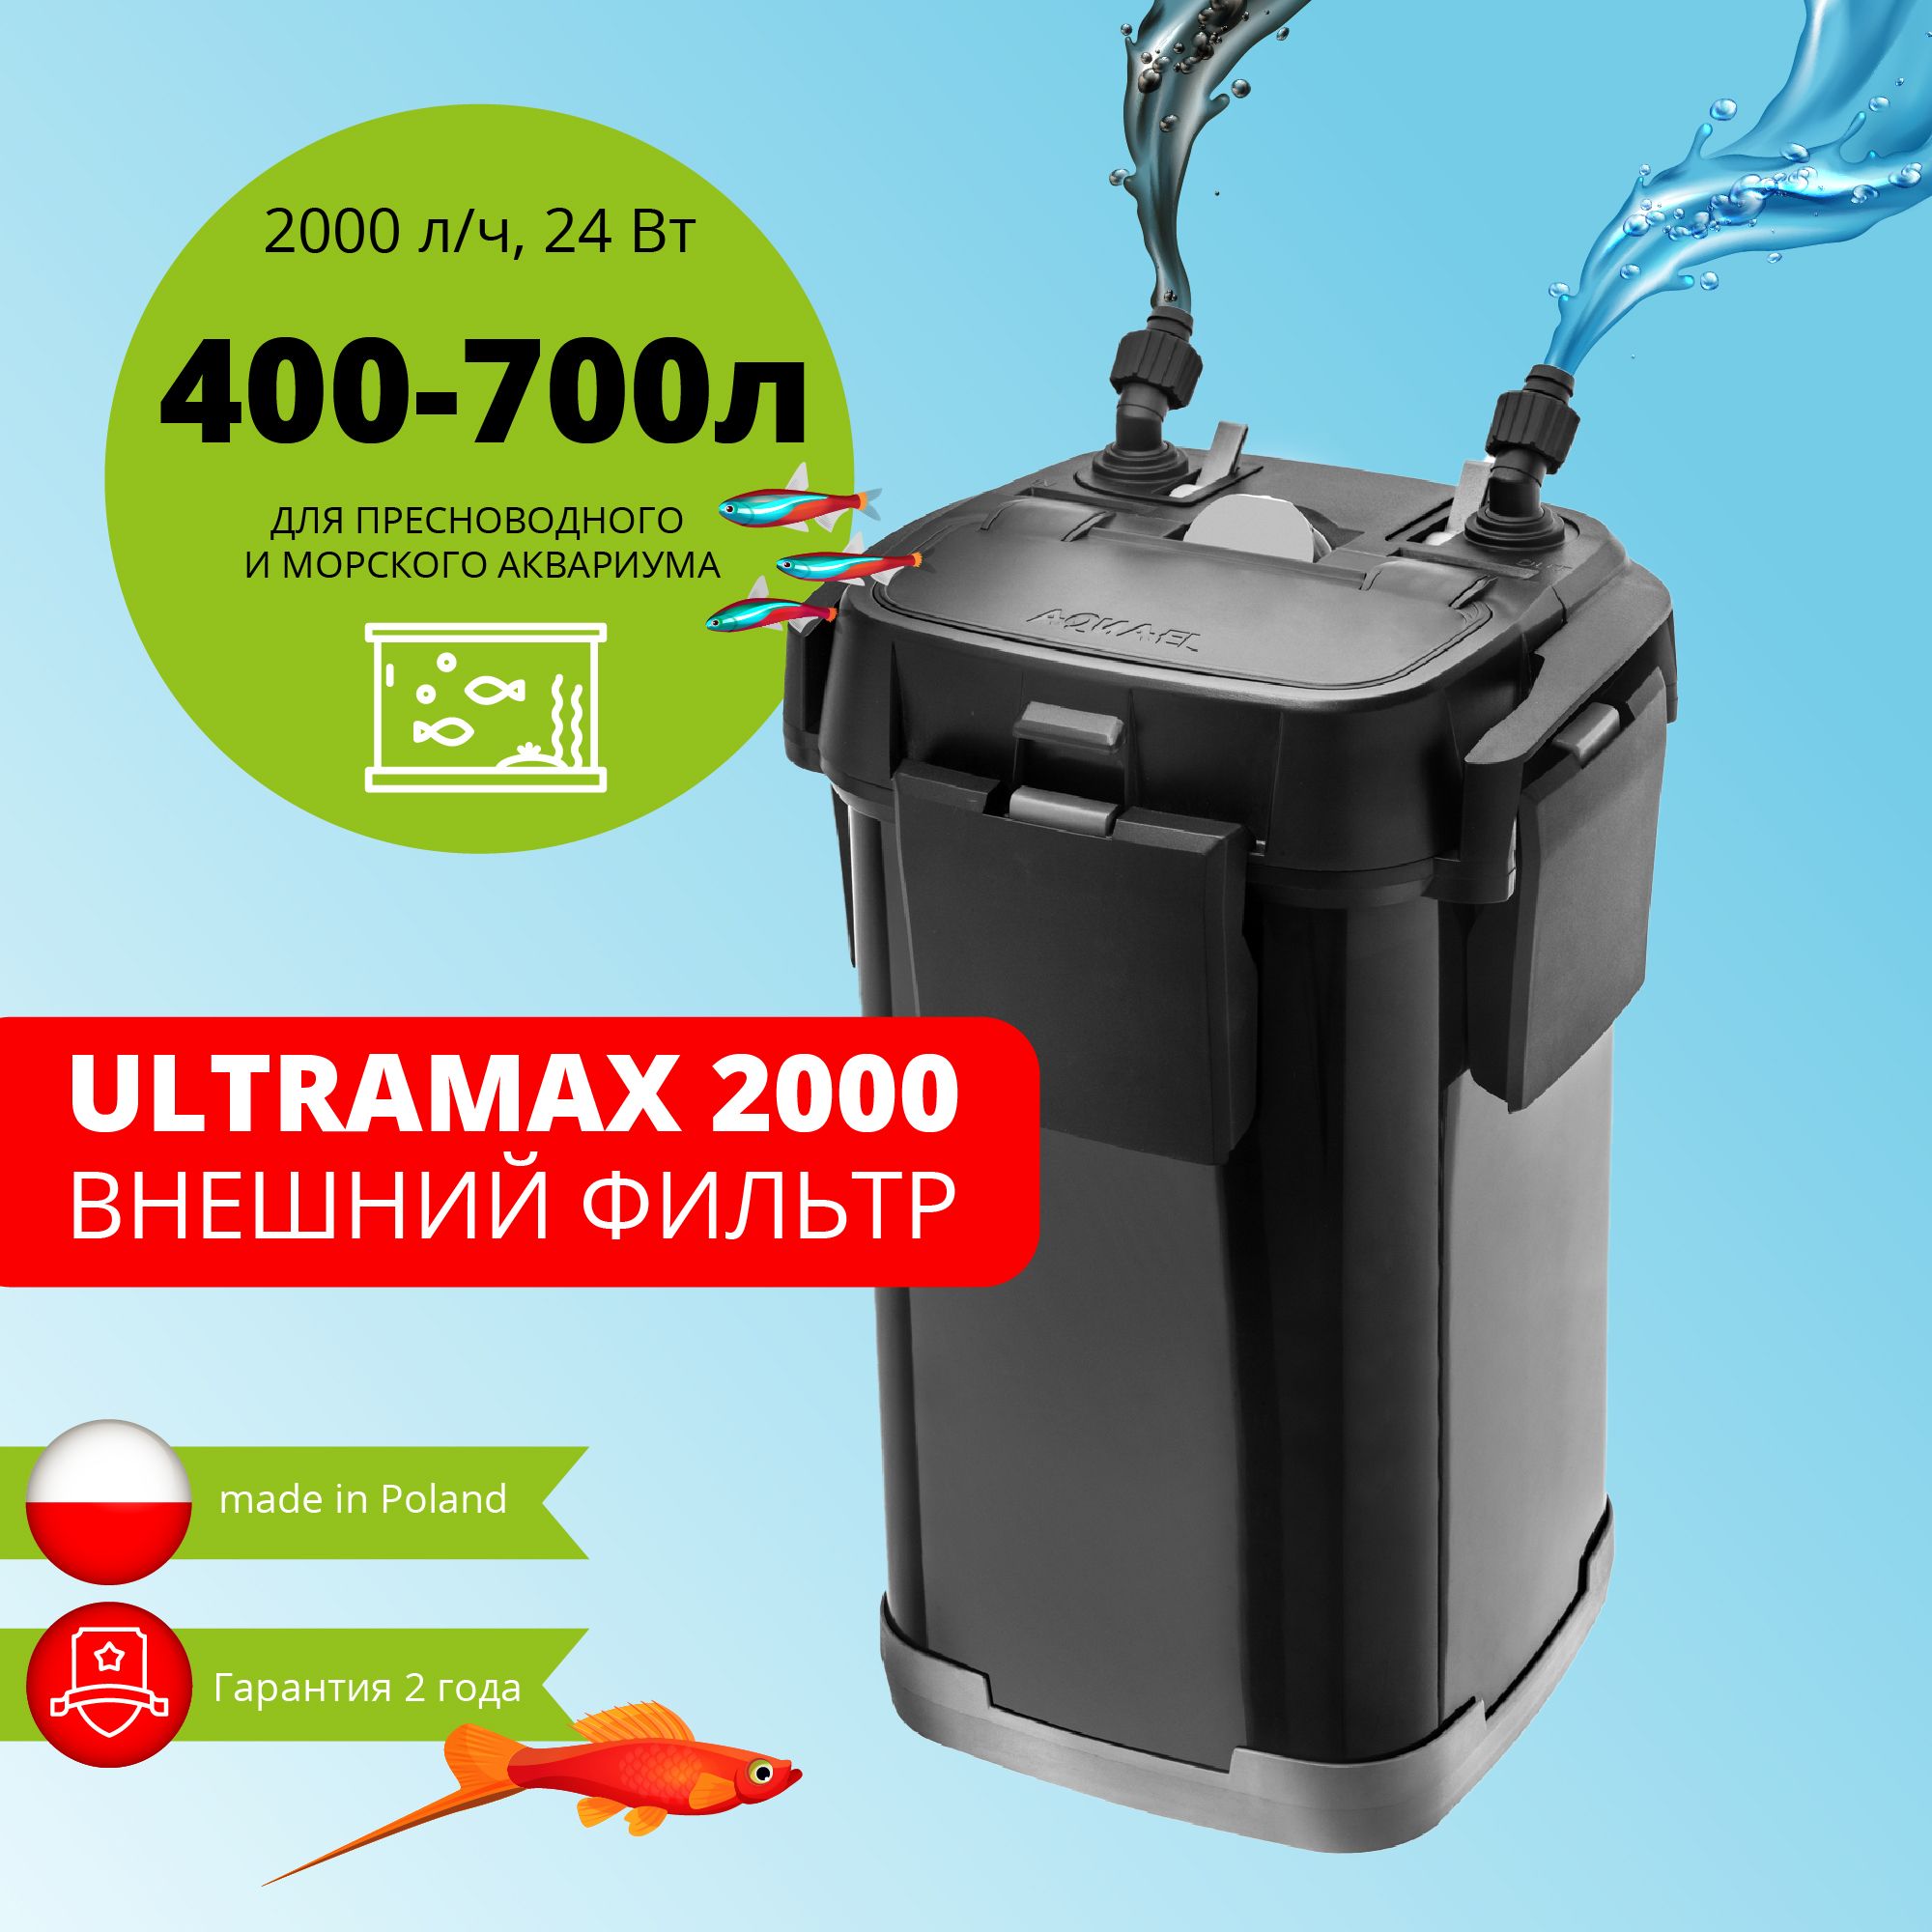 ФильтрдляаквариумавнешнийAQUAELULTRAMAX2000(400-700л,2000л/ч,17Вт)